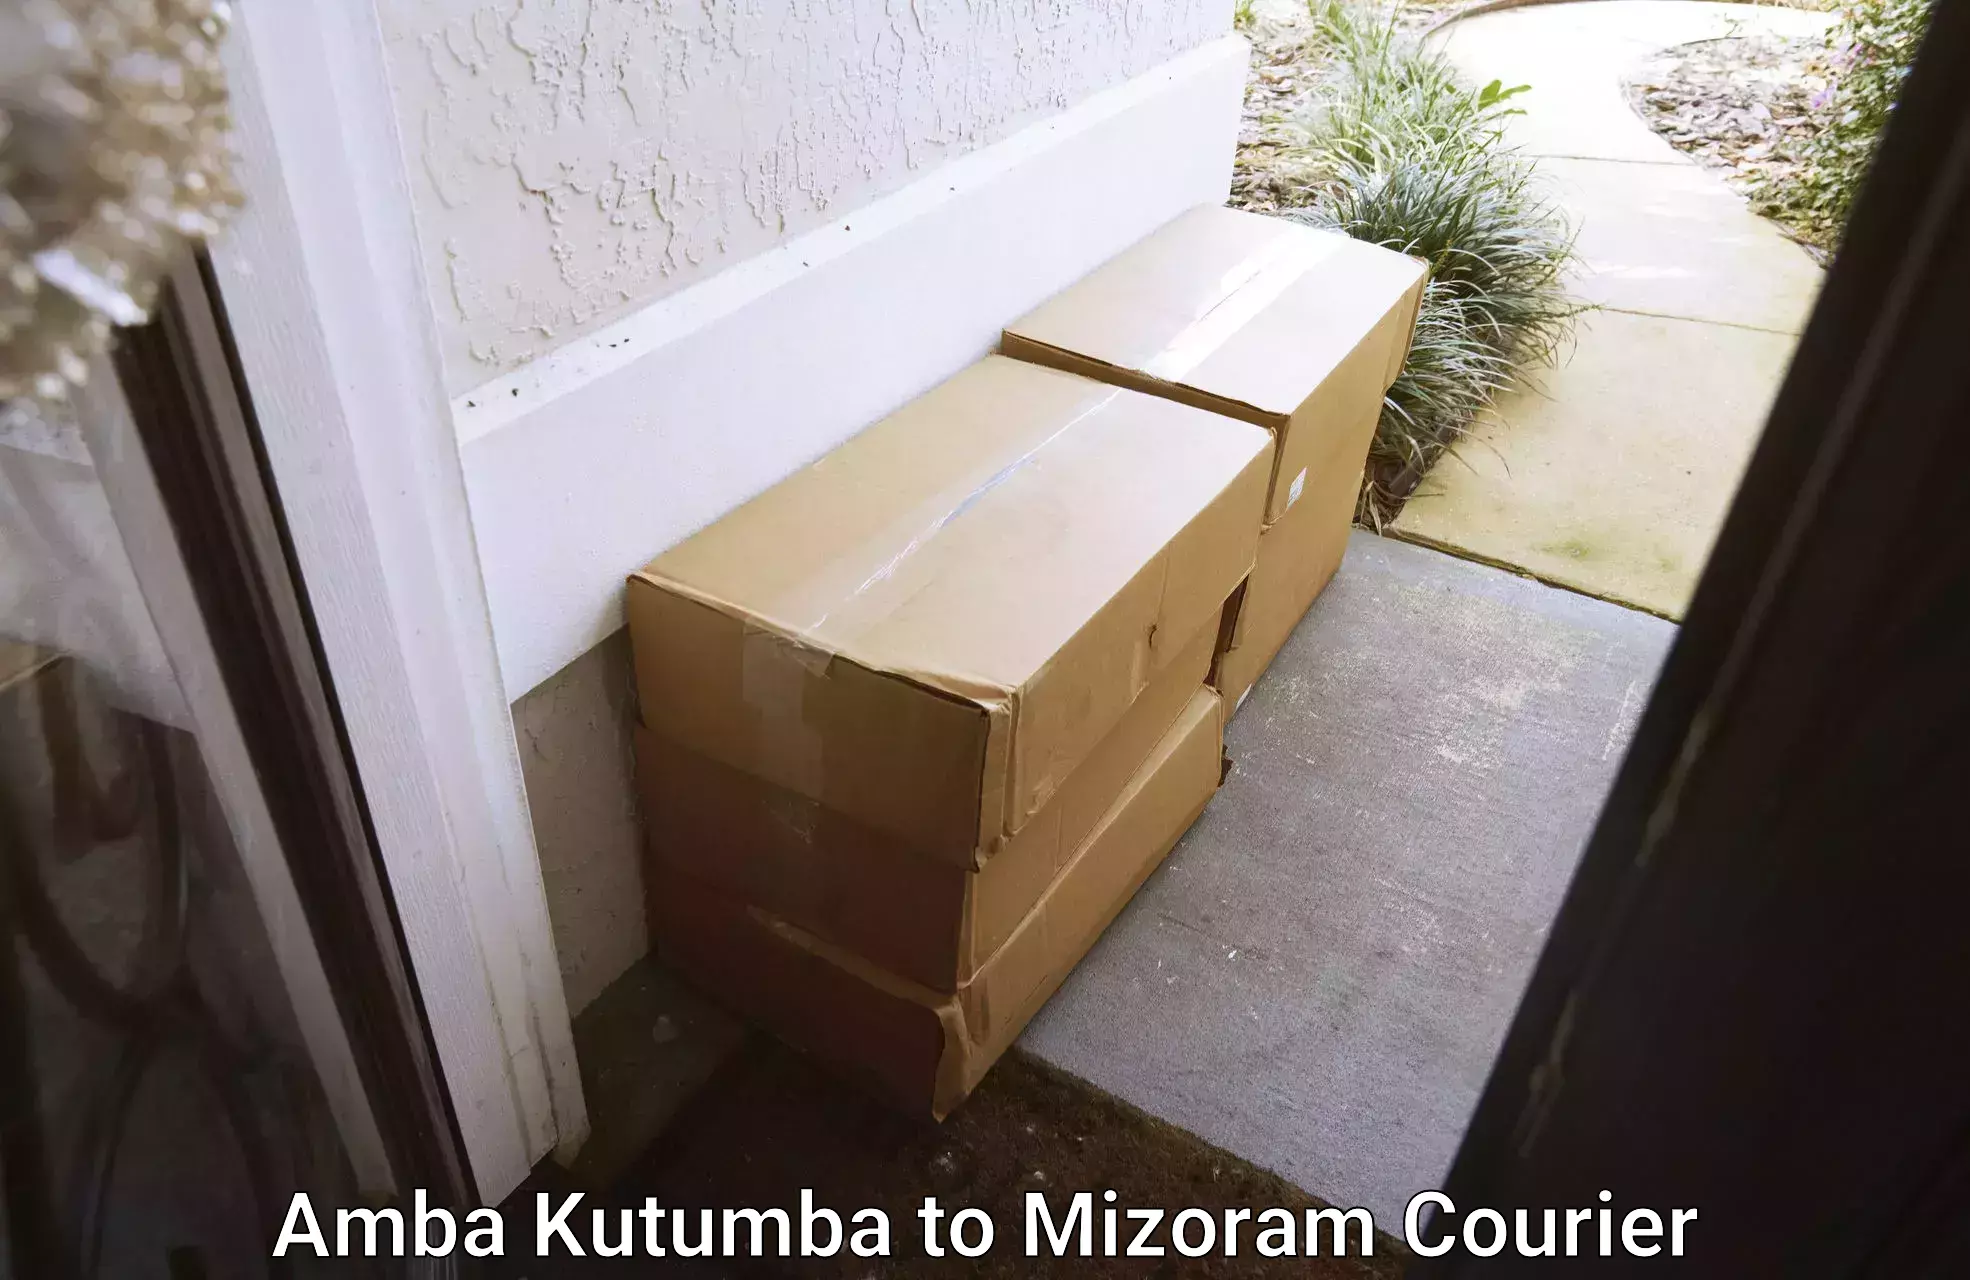 Furniture moving assistance Amba Kutumba to Mizoram